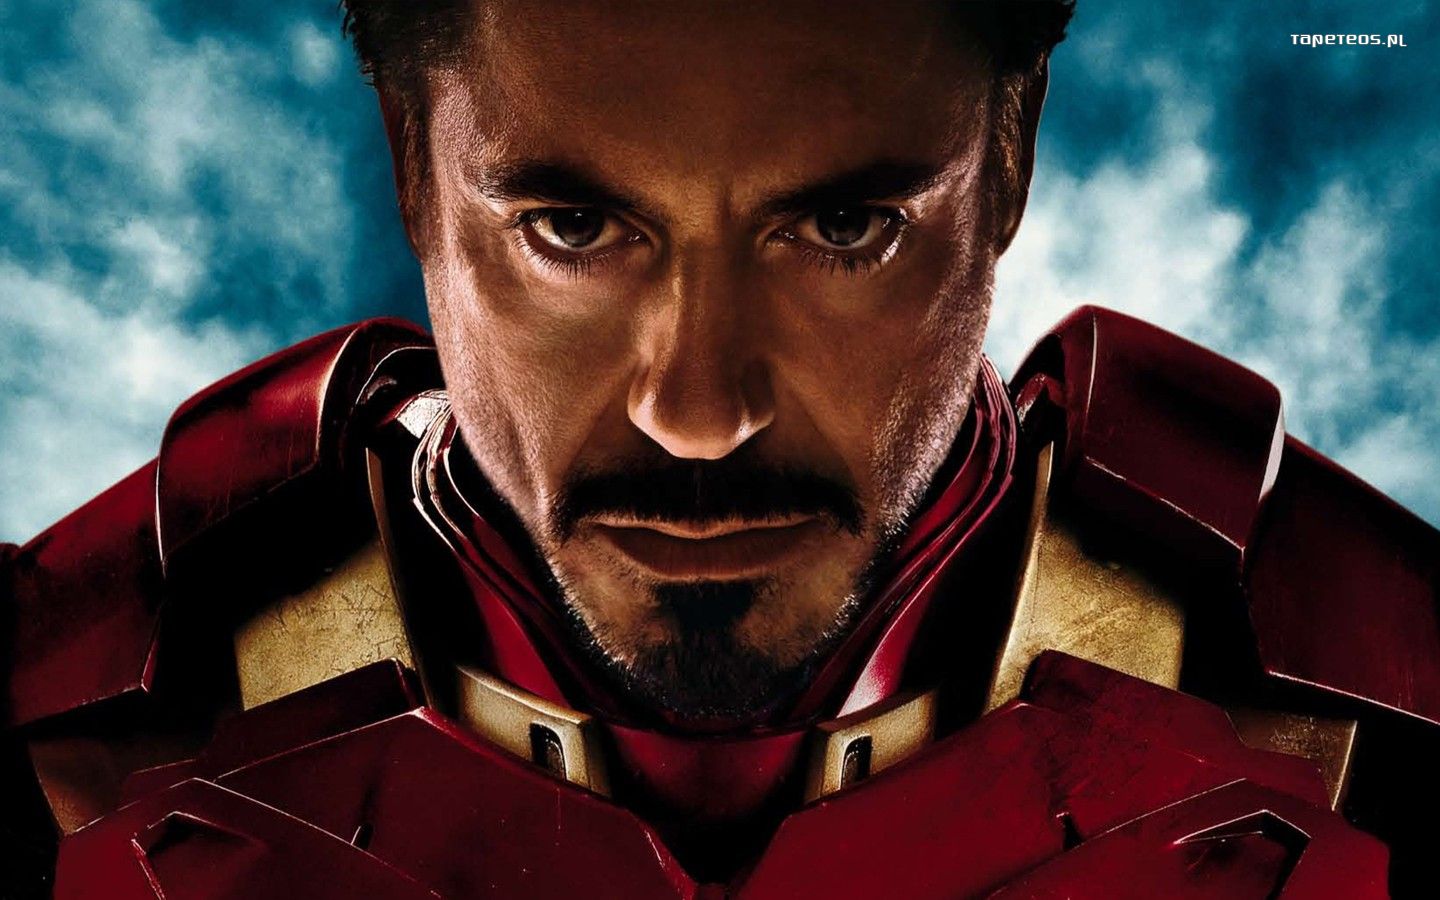 Iron Man 3 017 Robert Downey Jr